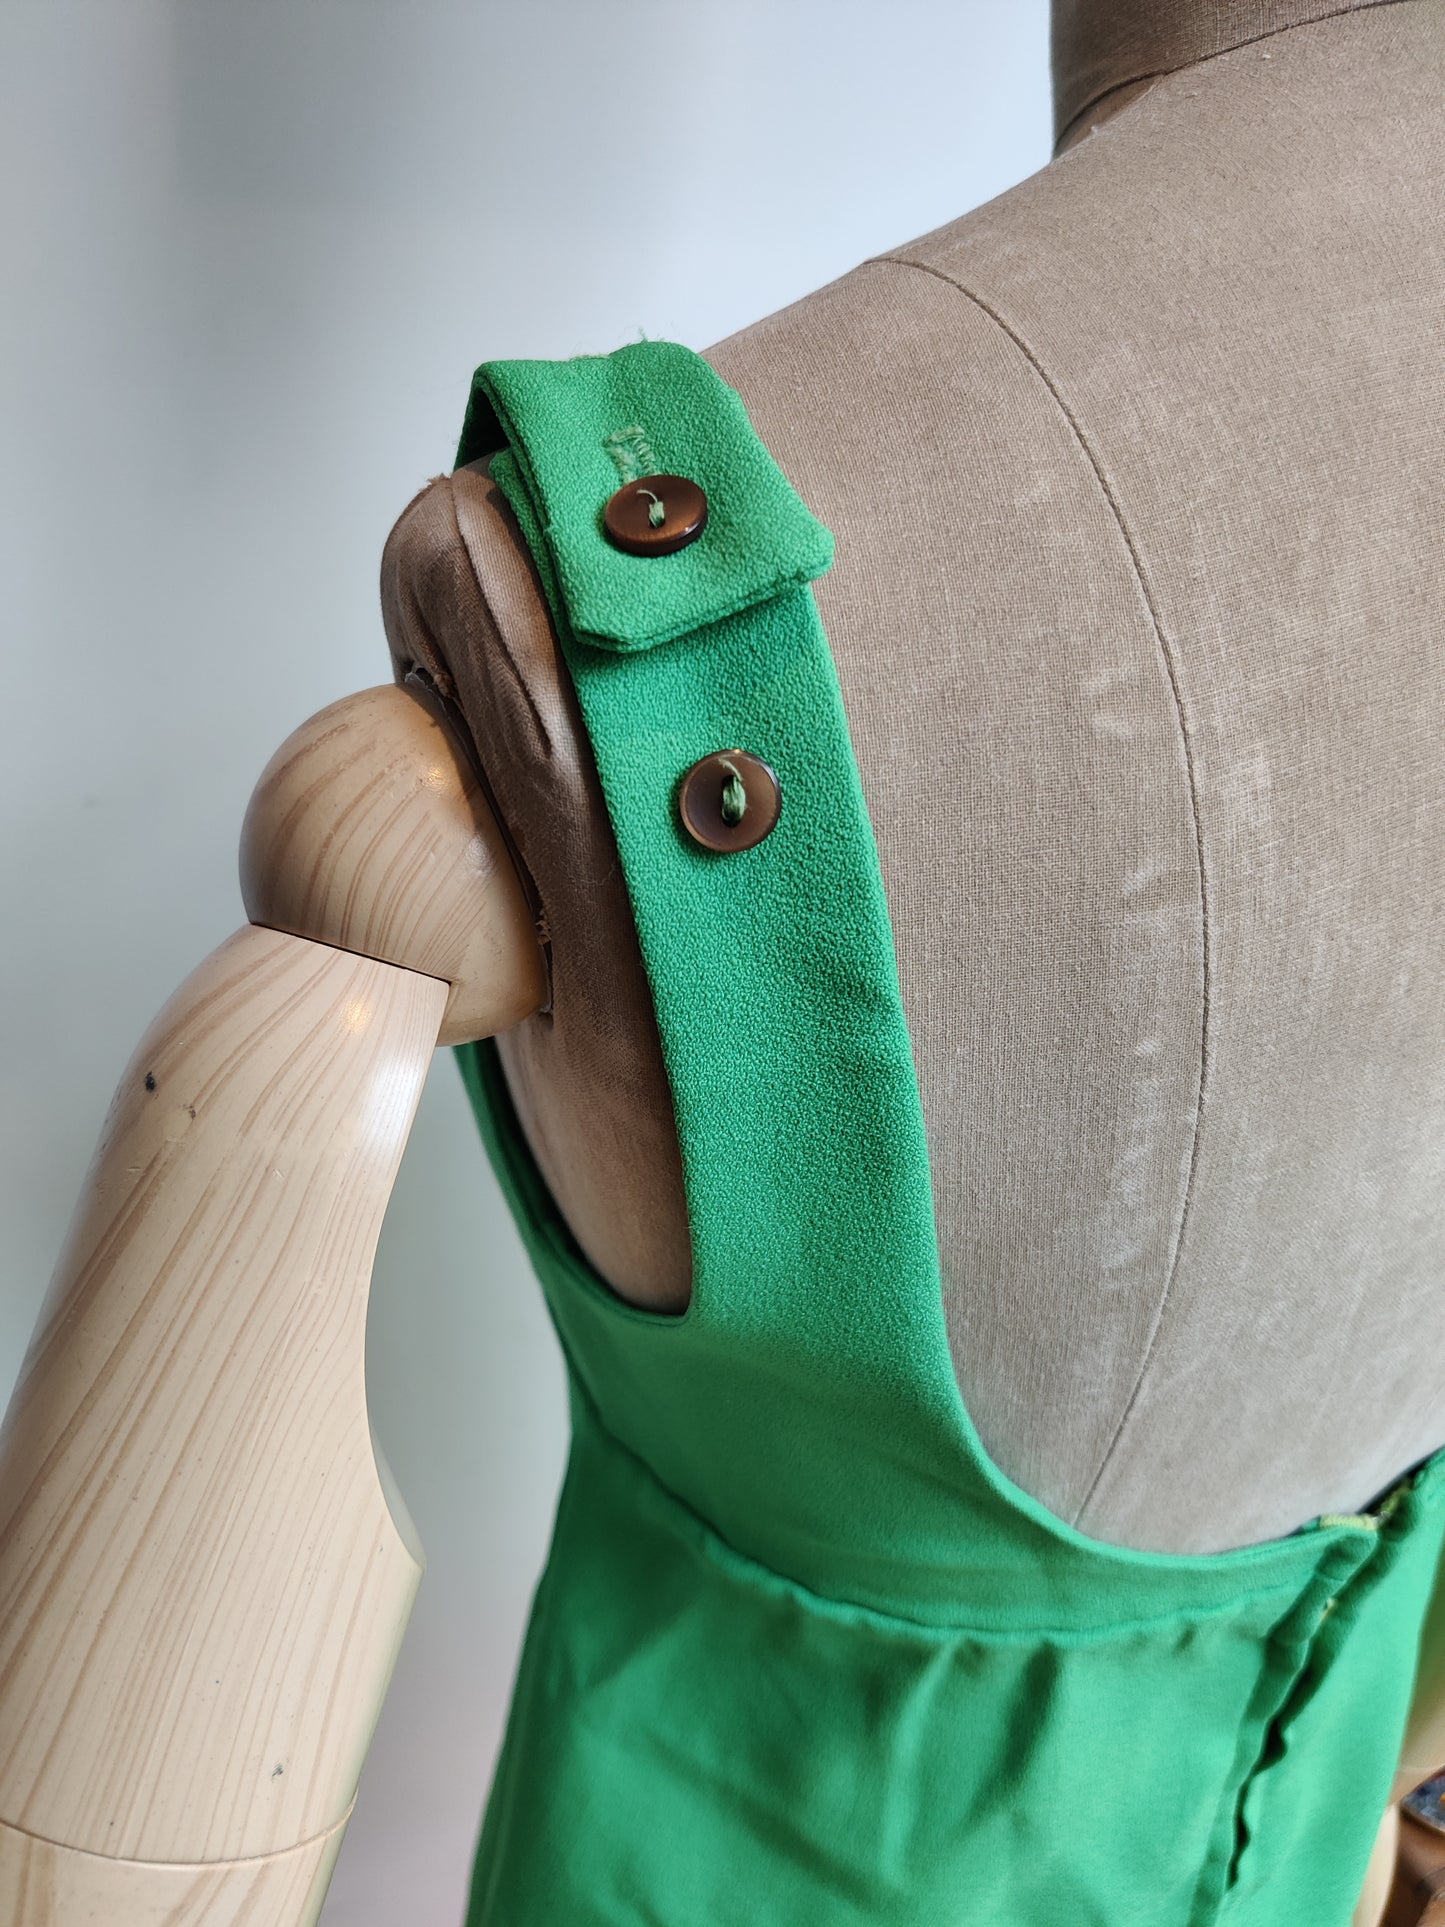 Adjustable shoulder straps in green.